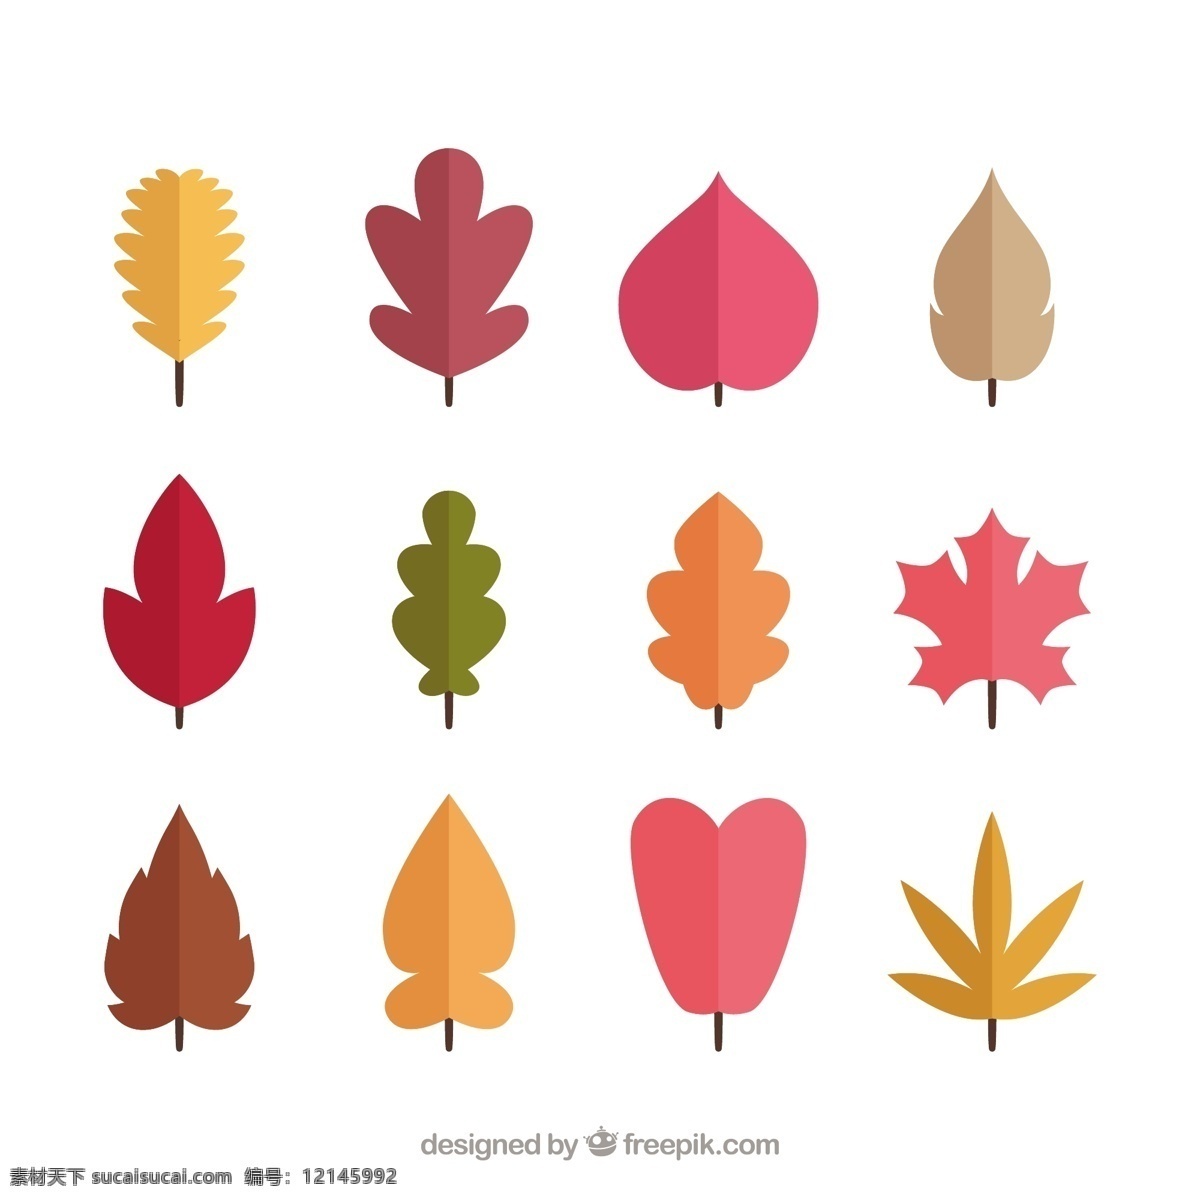 秋天 树叶 收集 叶 自然 颜色 温暖 树枝 秋天的树叶 季节 包装 秋天的叶子 落叶 温暖的颜色